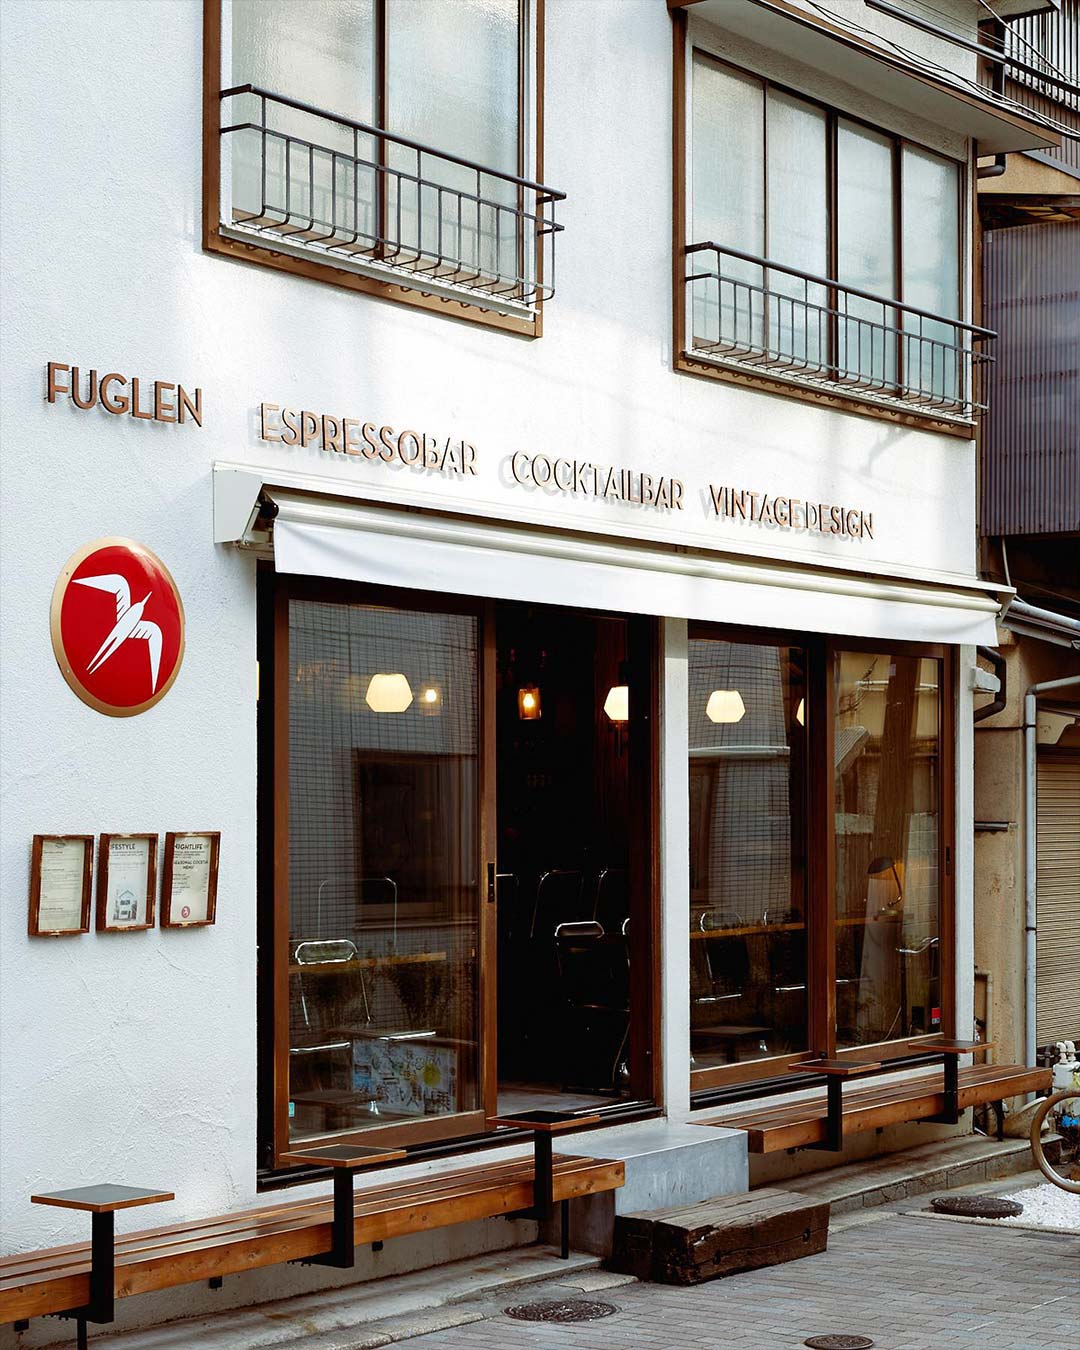 Outside Fuglen Tomigaya coffee shop in Tokyo.